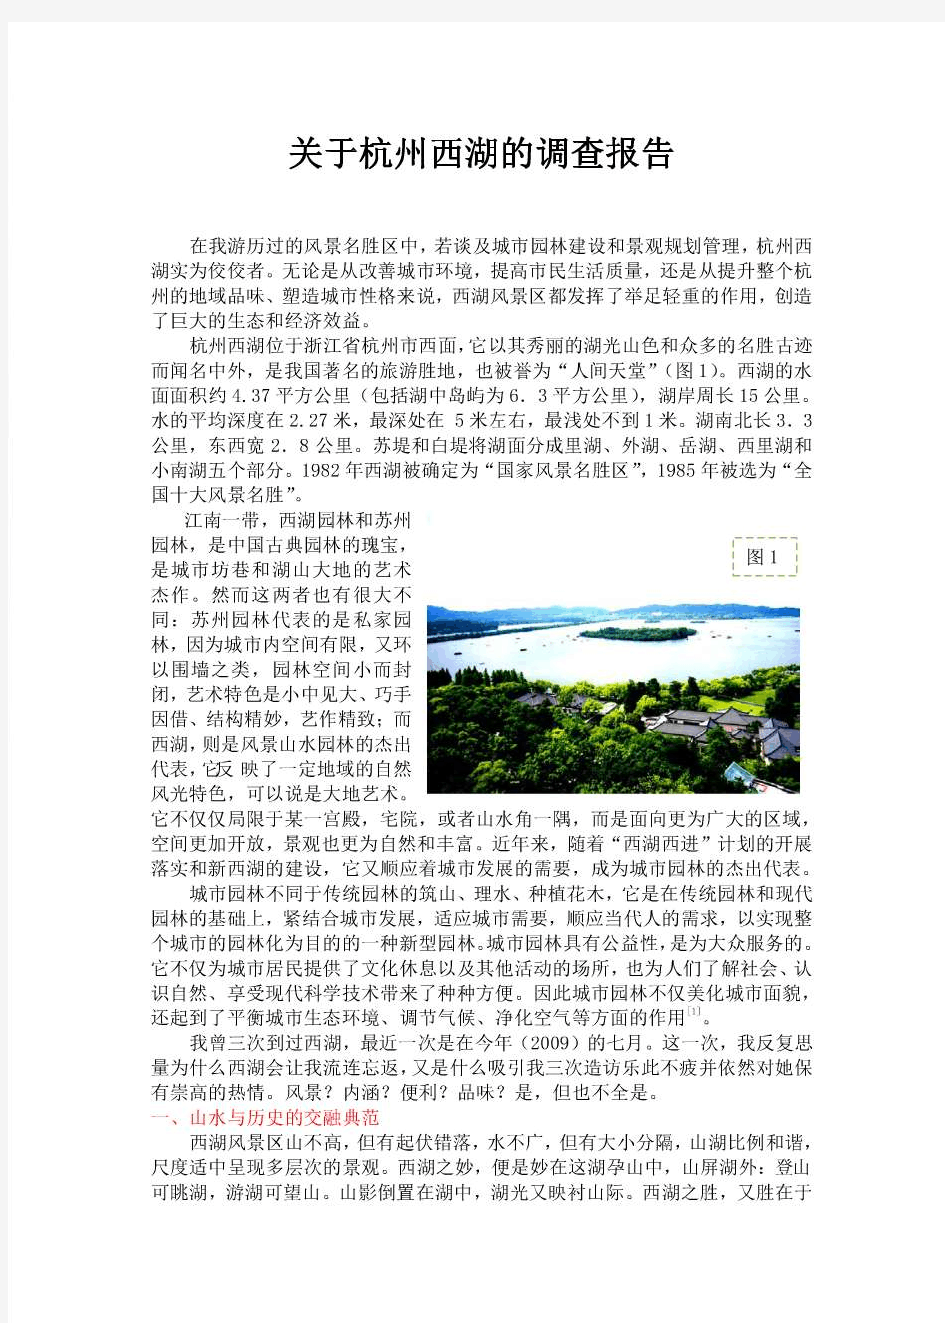 关于杭州西湖的调查报告